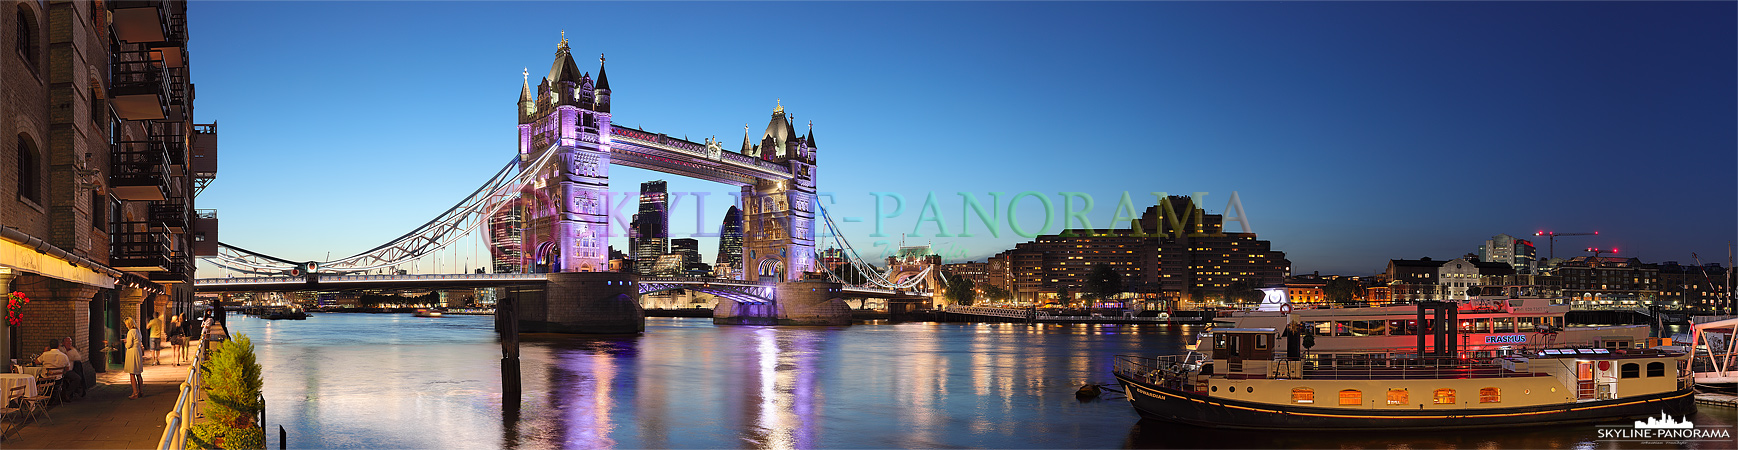 Tower Bridge – London Sehenswürdigkeiten (p_00828)